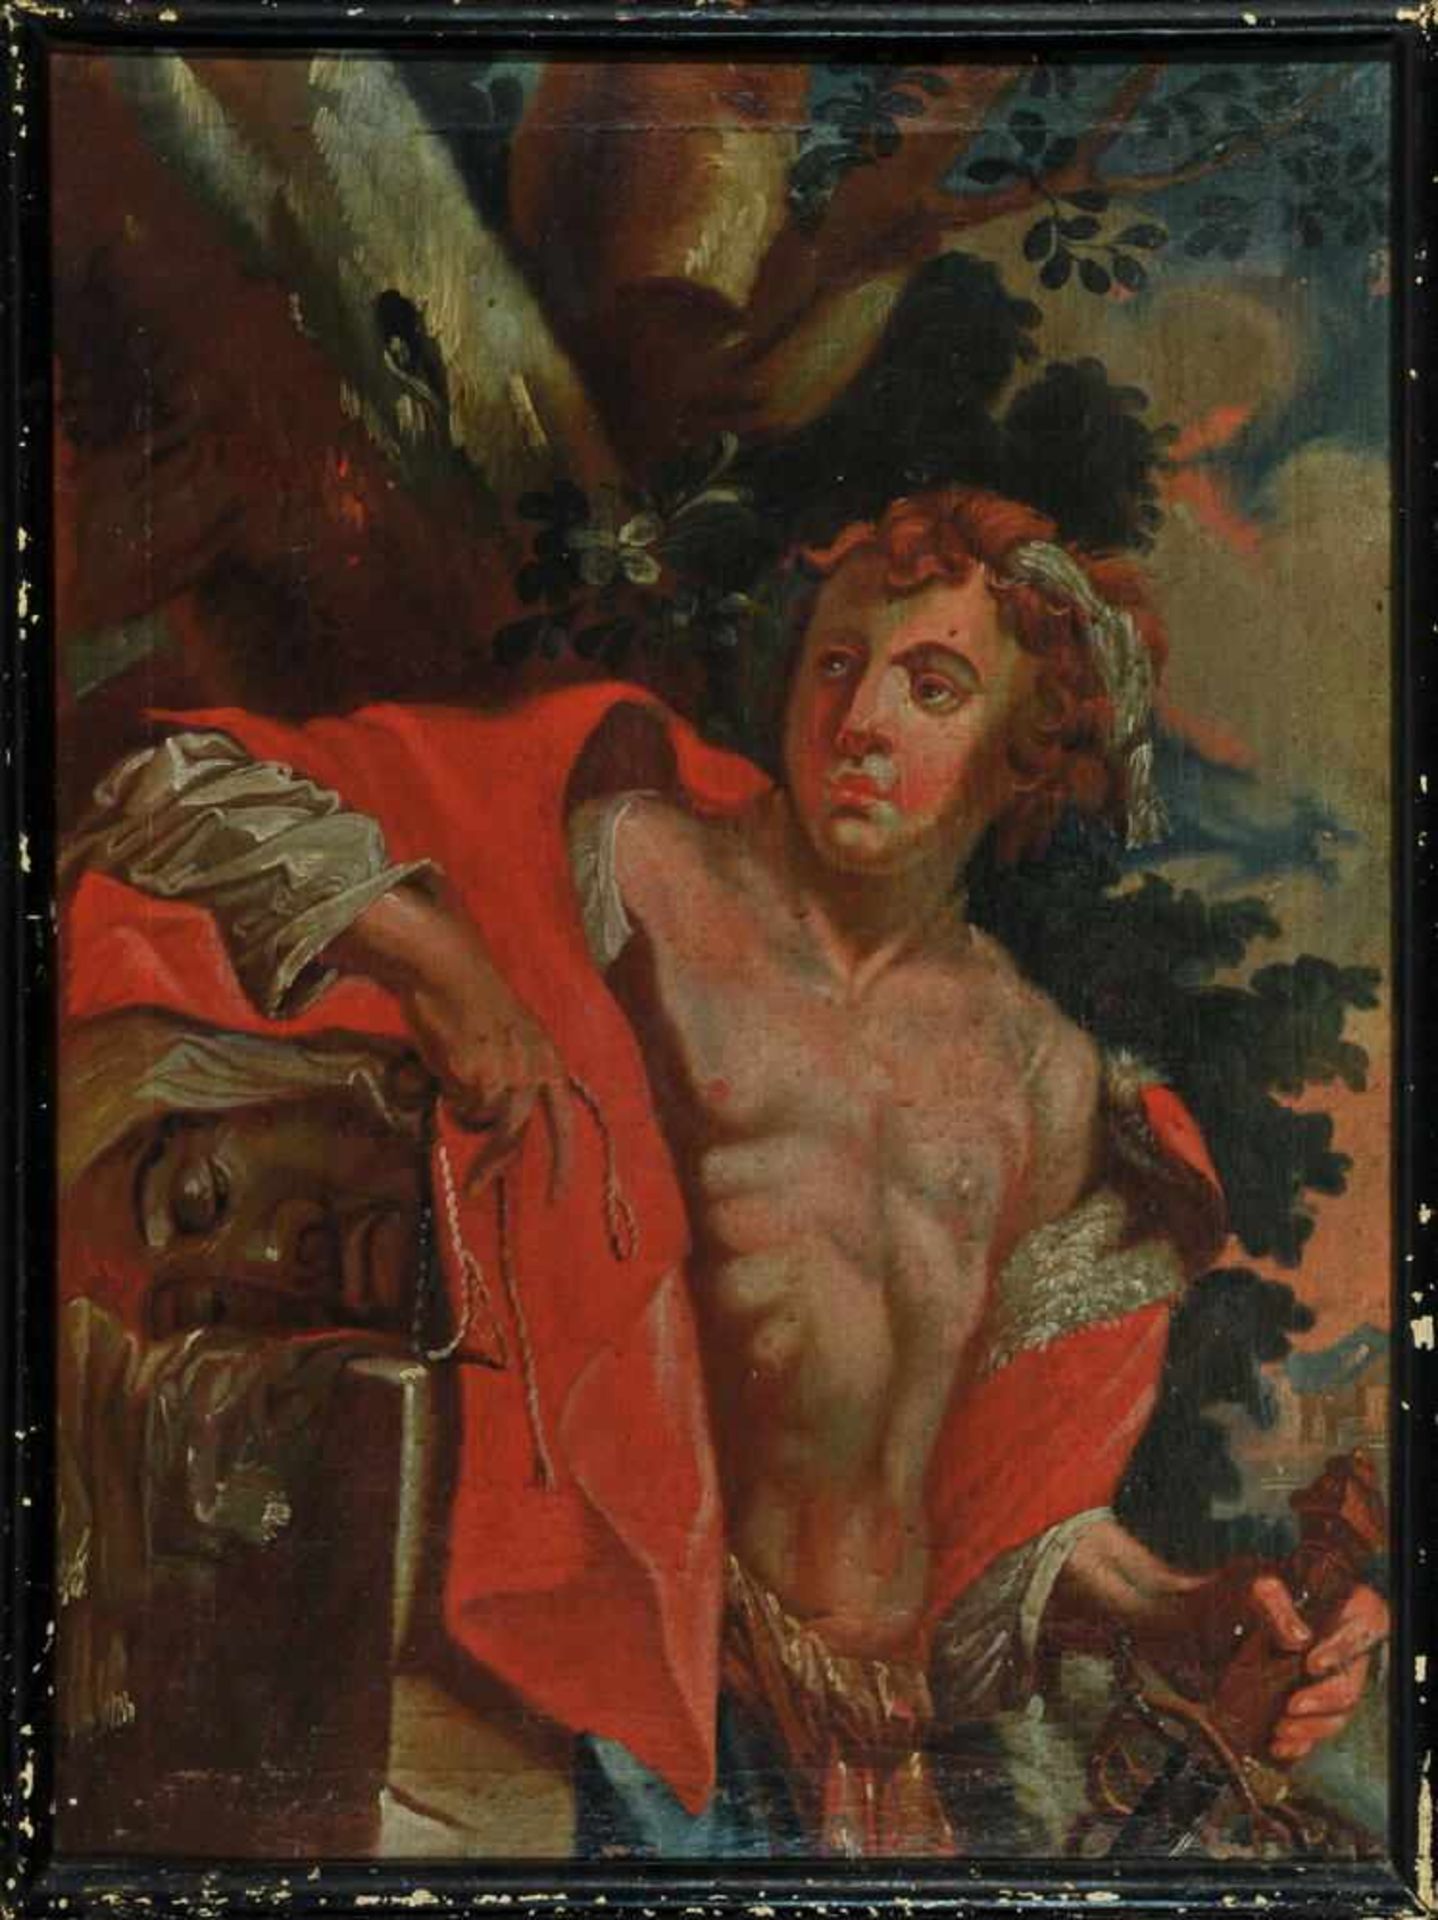 Bildnismaler des 19. Jh.Öl/Lwd, 67 x 50 cm, " David mit dem Haupt des Goliath ", teilw. retuschierte